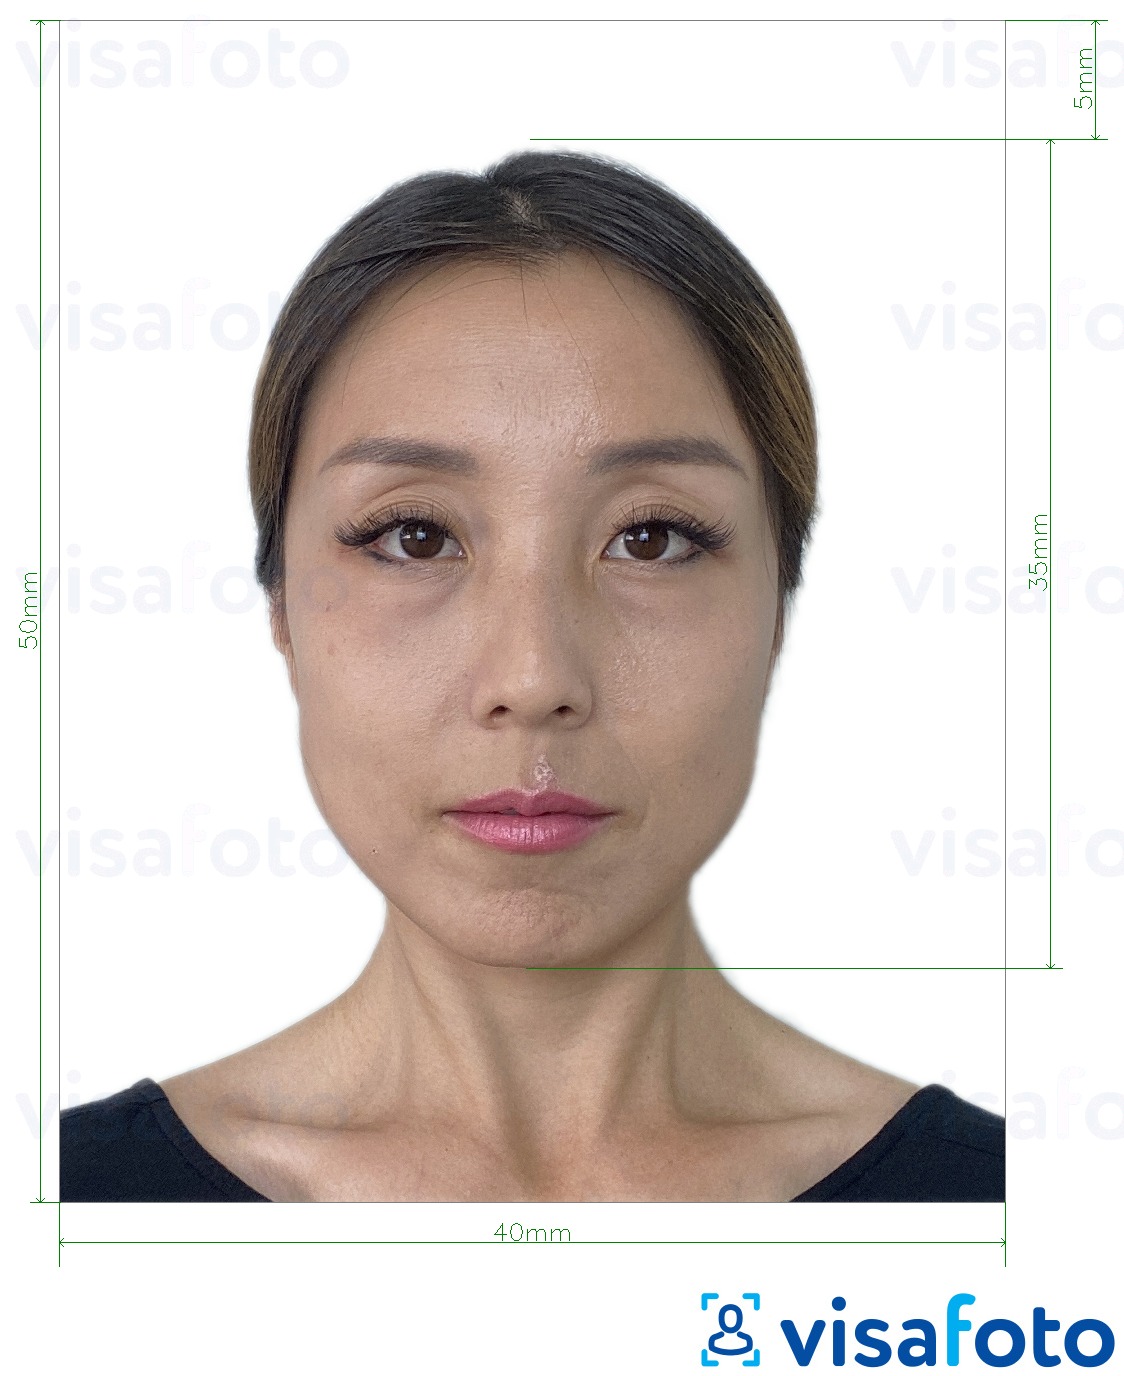 Приклад фотографії для Гонконгський паспорт 40x50 мм (4x5 см) з точними специфікаціями розміру